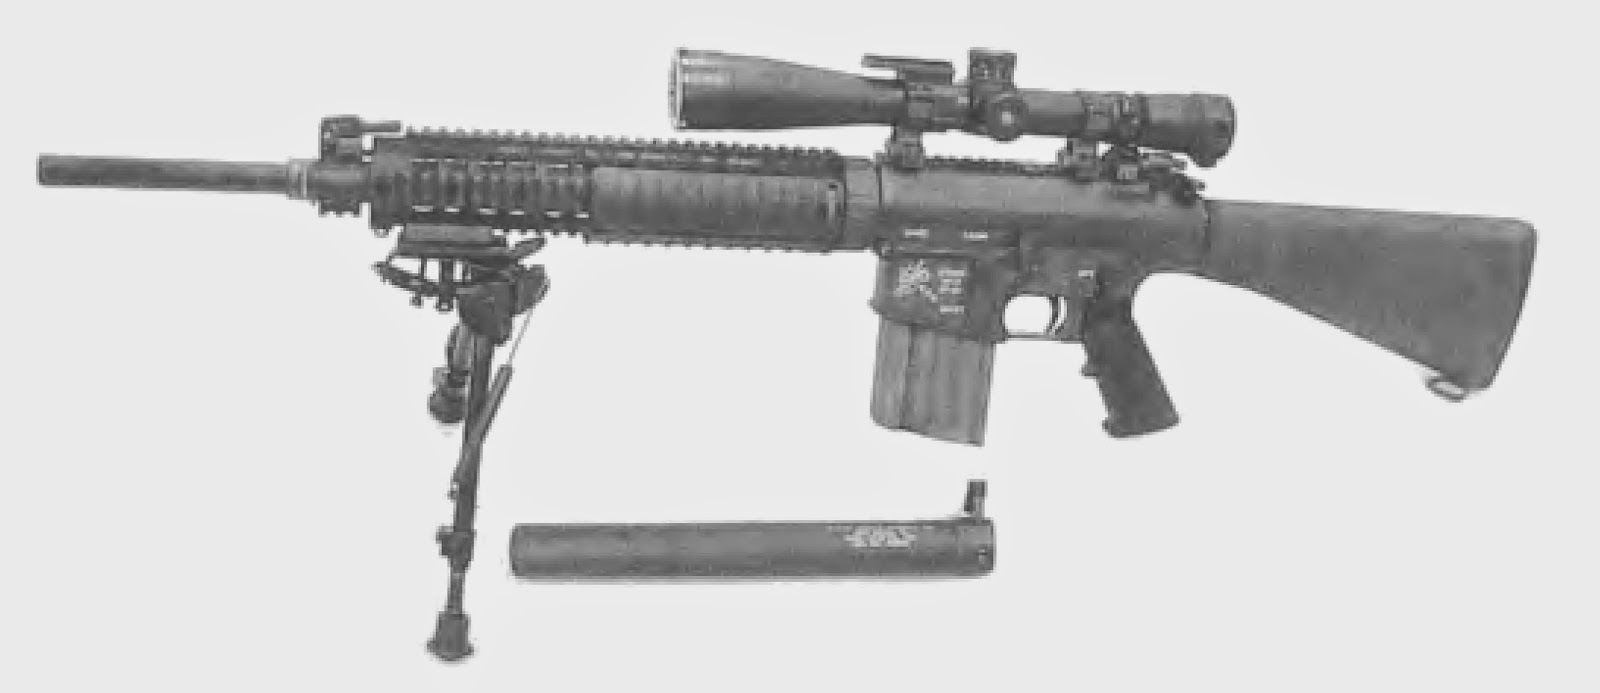 Версия Mk 11 Mod 0 винтовки SR-25.